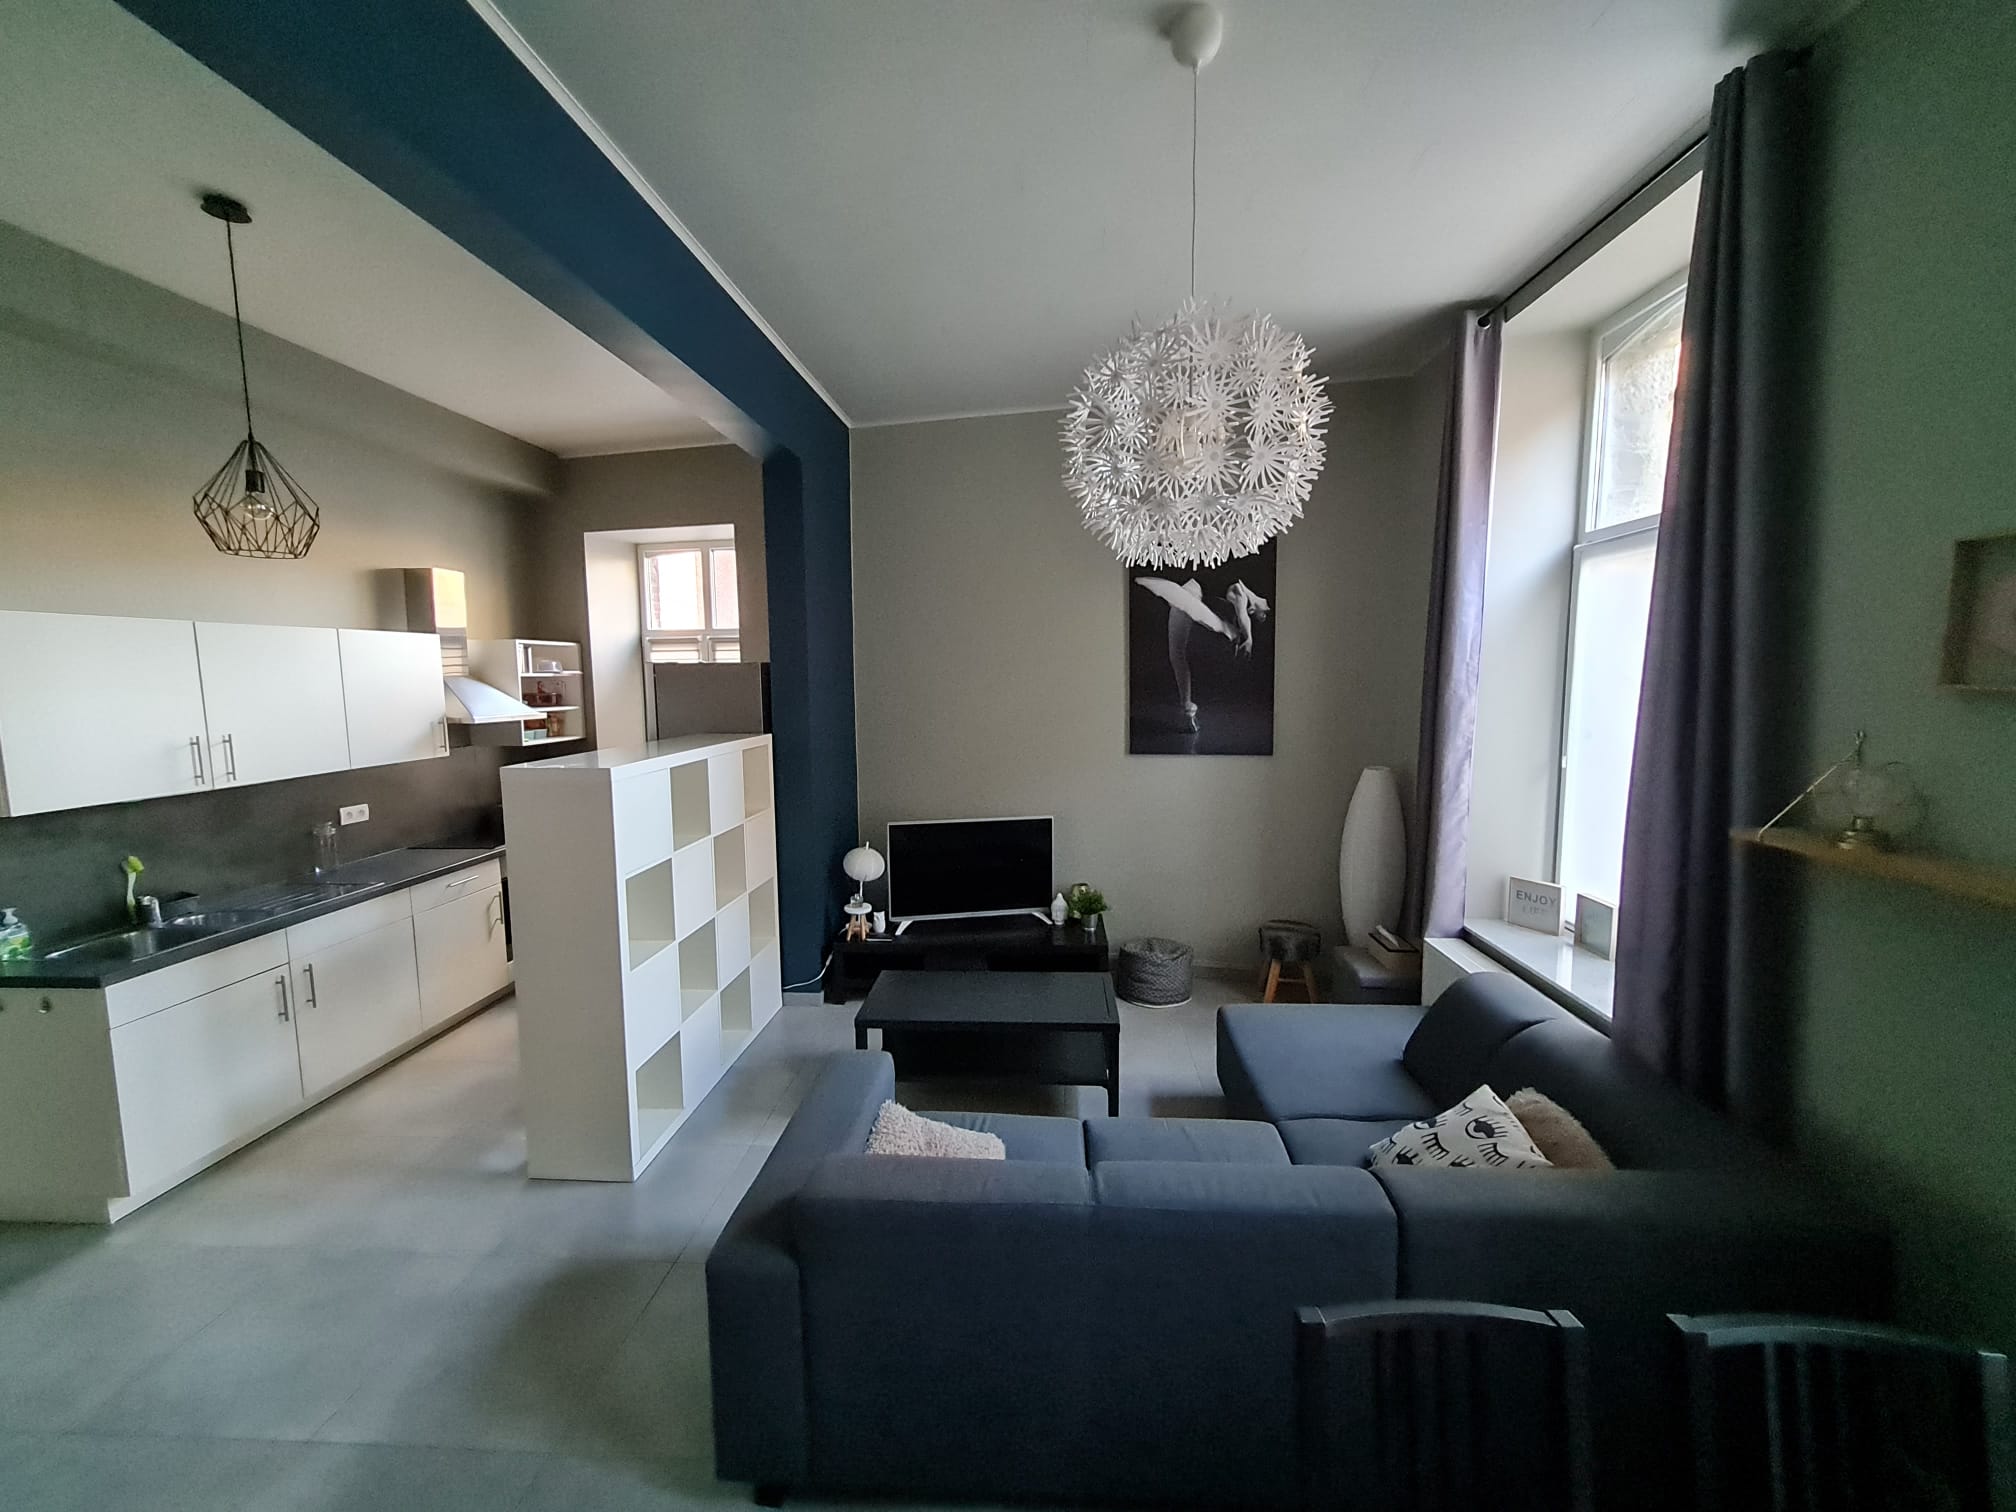 Appartement meublé de 72m² à louer- Tournai